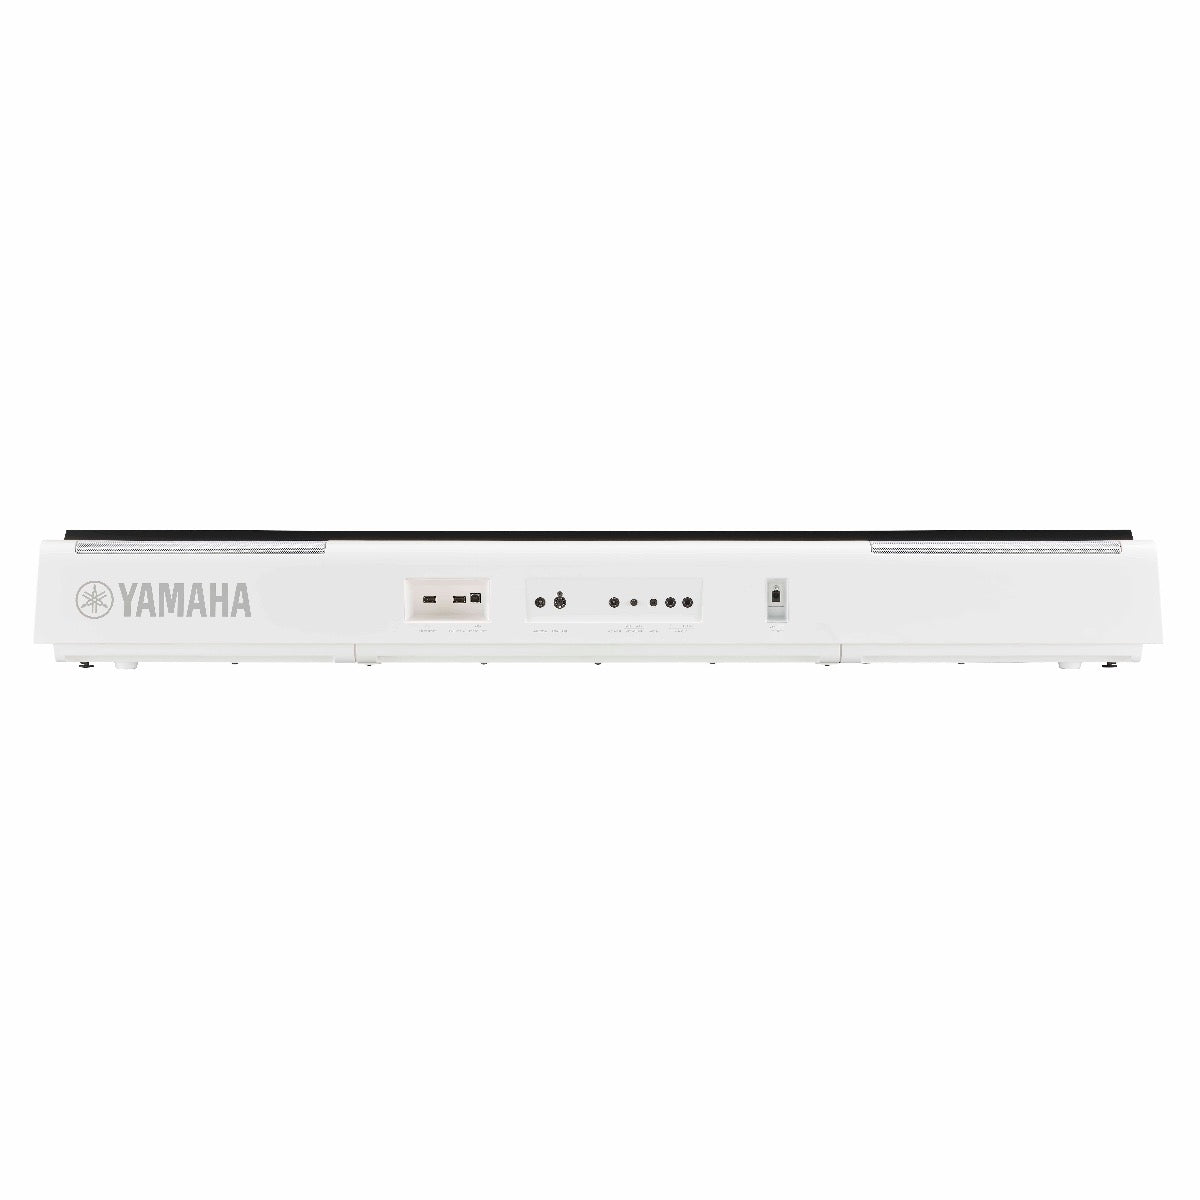 Yamaha P-S500 Digital Piano - White, View 2